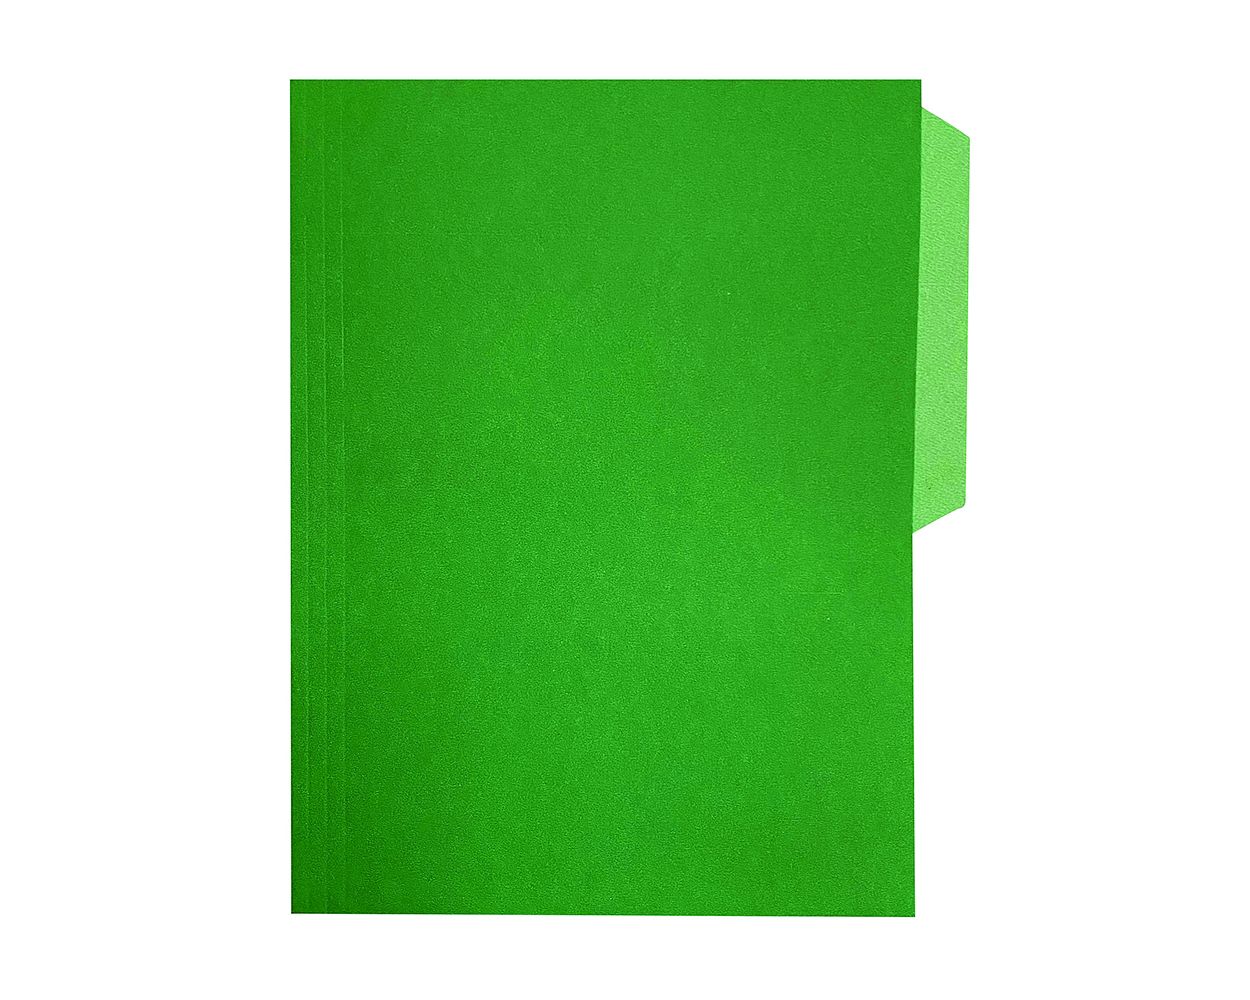 LM-Fólder tamaño oficio verde c/100 Fólder de 1/2 ceja, color verde, Fortec, elaborado en cartulina bristol de 162 grs / 9.5 pts tamaño oficio, medidas: 23.8 X 34.5 cm, suaje lateral y superior para broche de 8 cm y ceja redondeada, 1 paquete con 100 fólders. - FOV-15